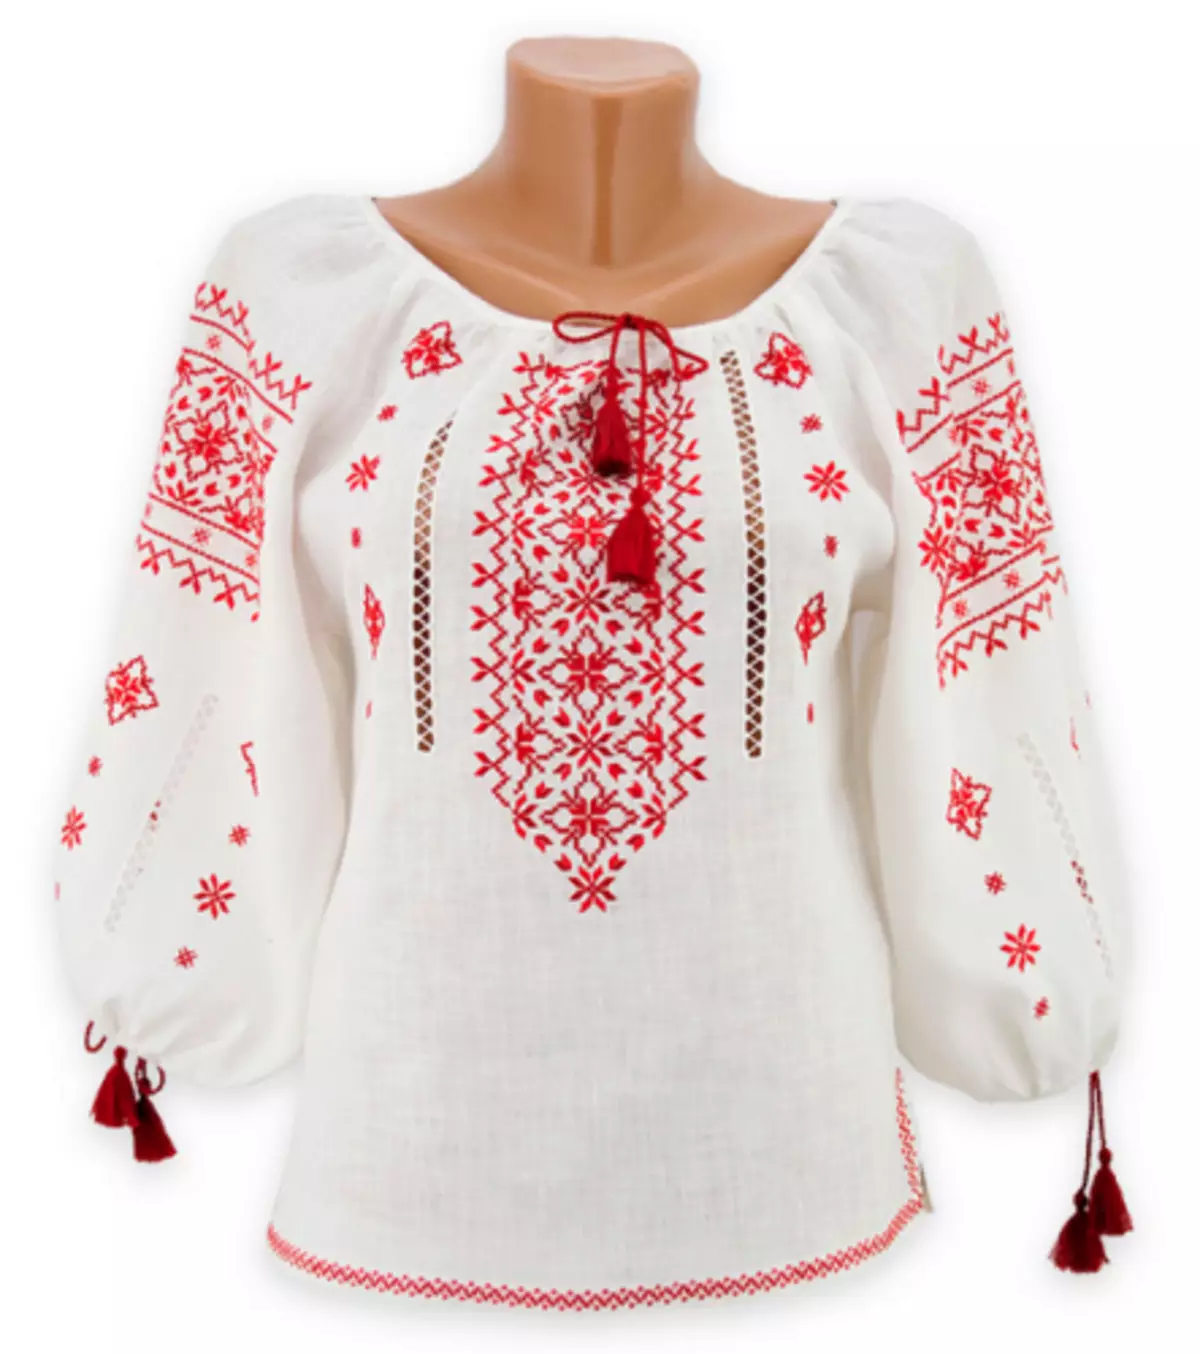 Русско народная блузка. Белорусская Национальная вышиванка женская. Украинская вышивка на рубахе. Украинская блузка с вышивкой. Рубаха в русском народном стиле.